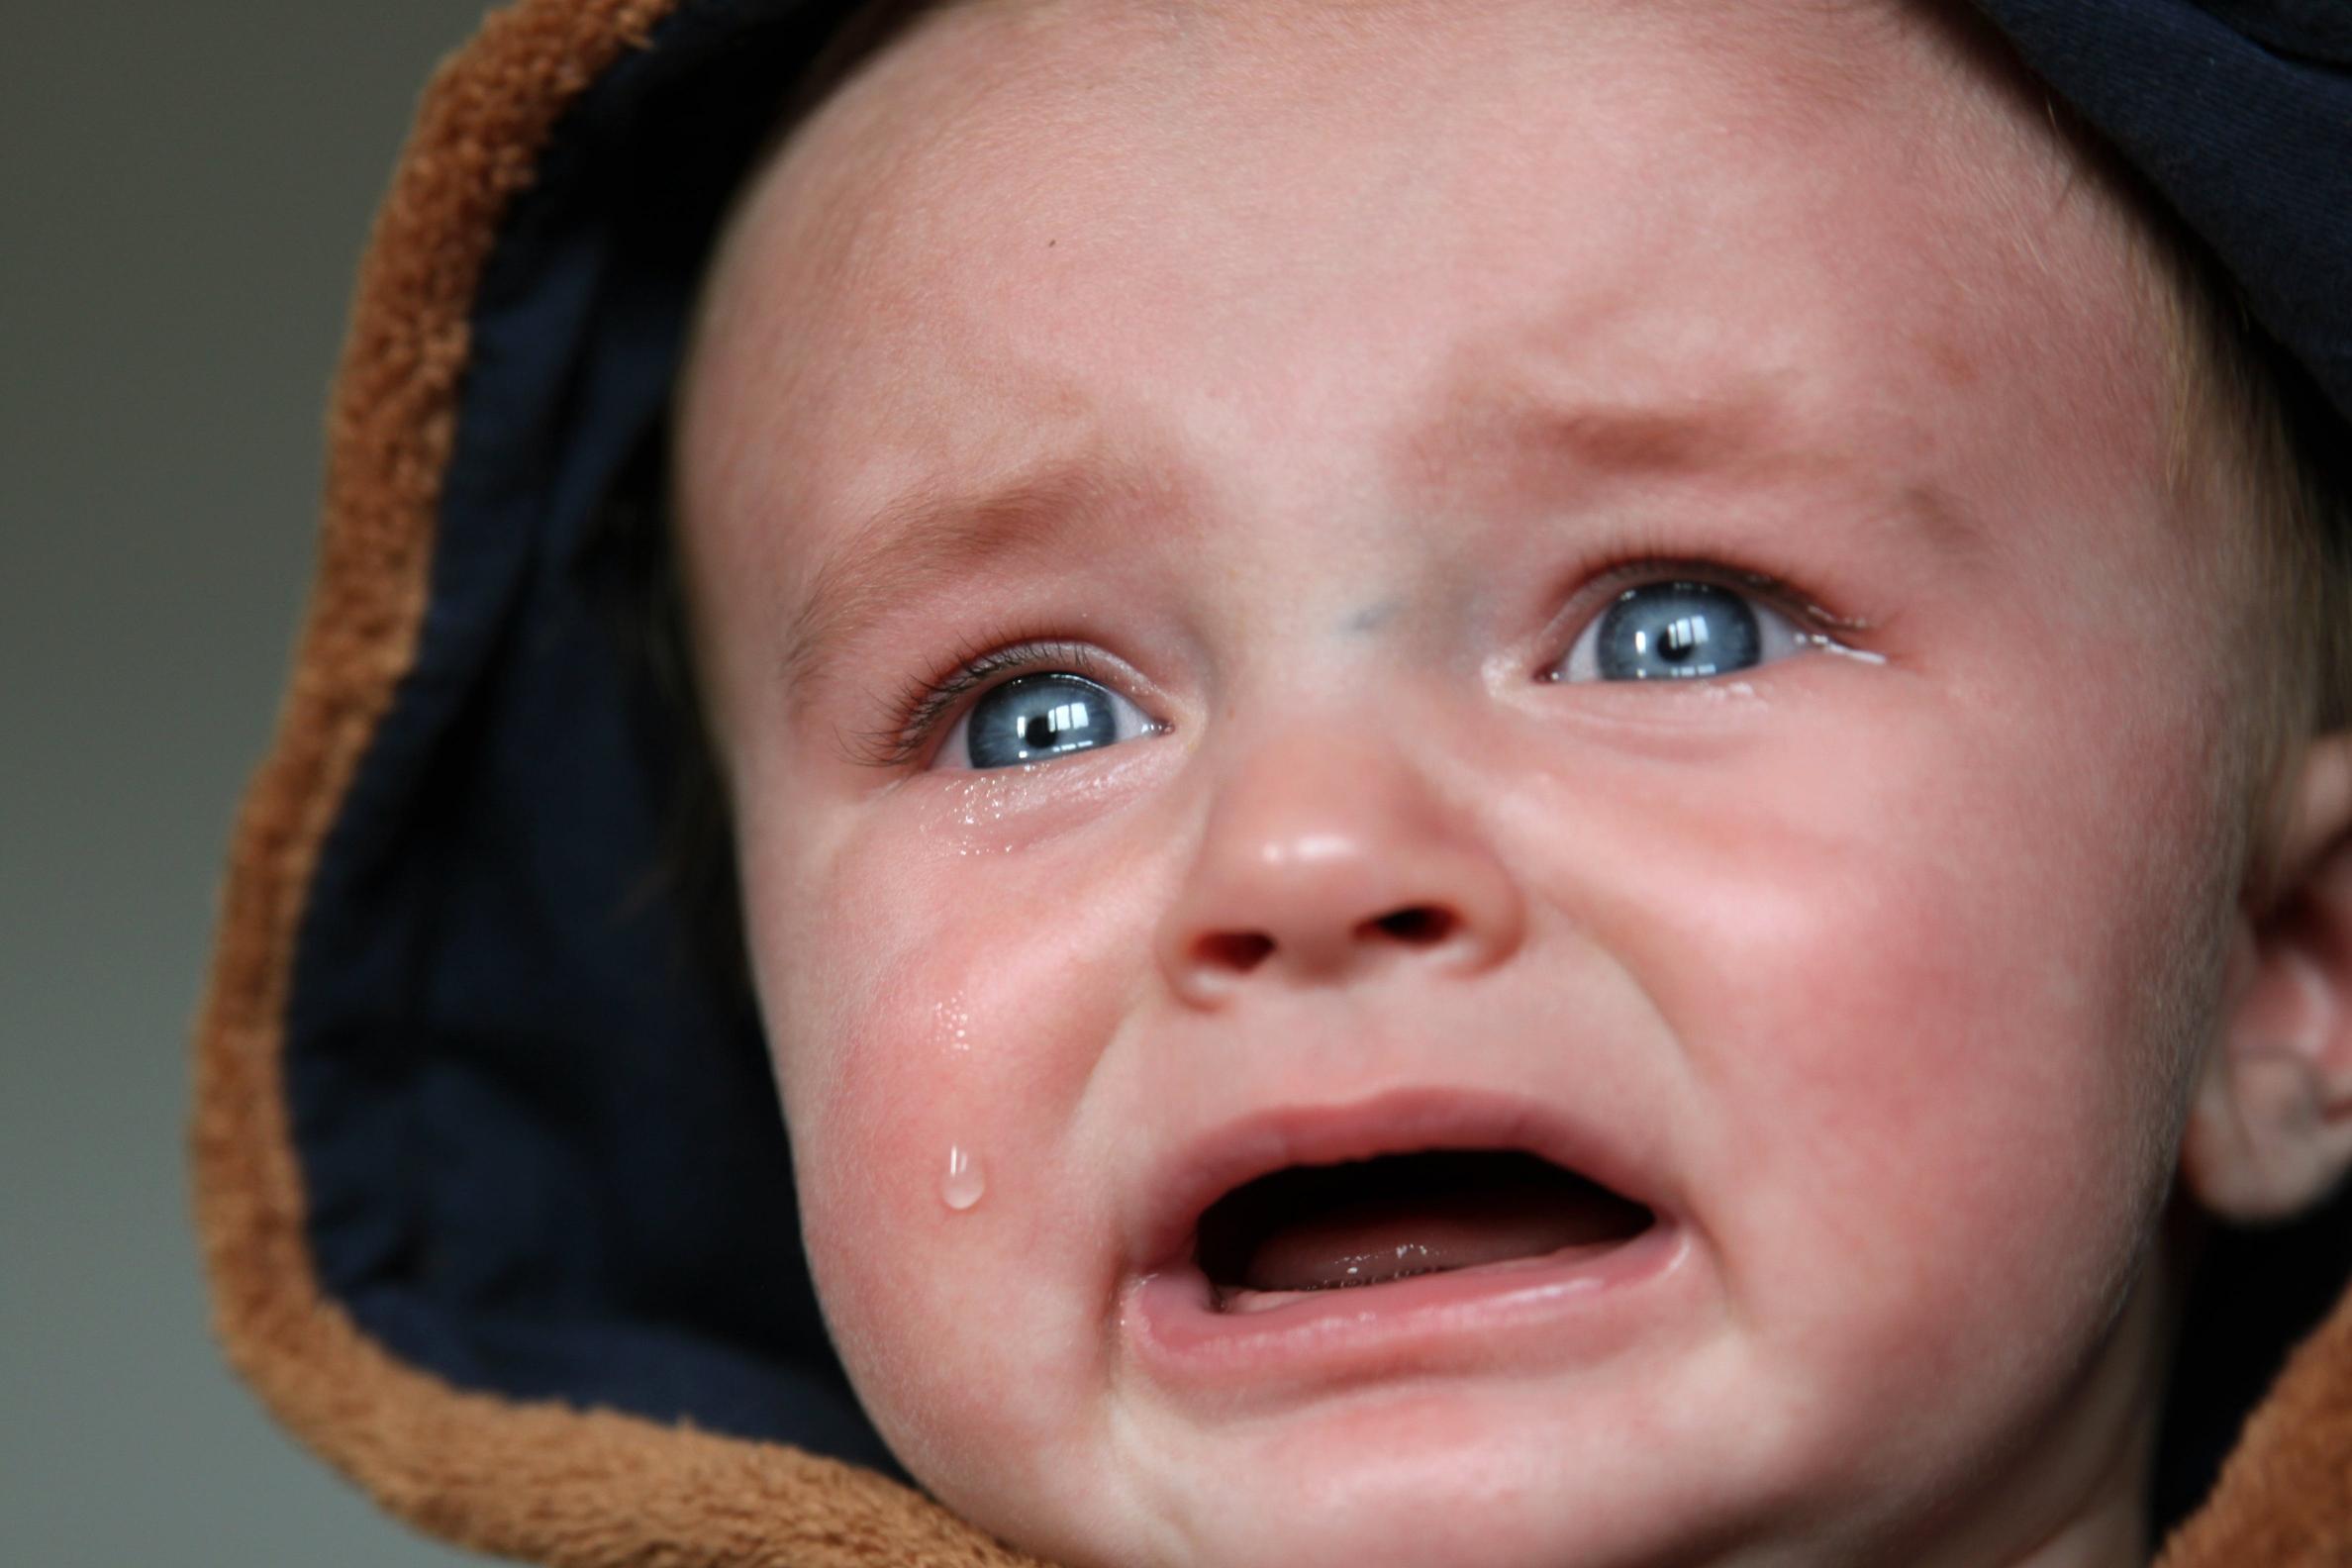 Metody uspokajania płaczącego niemowlęcia